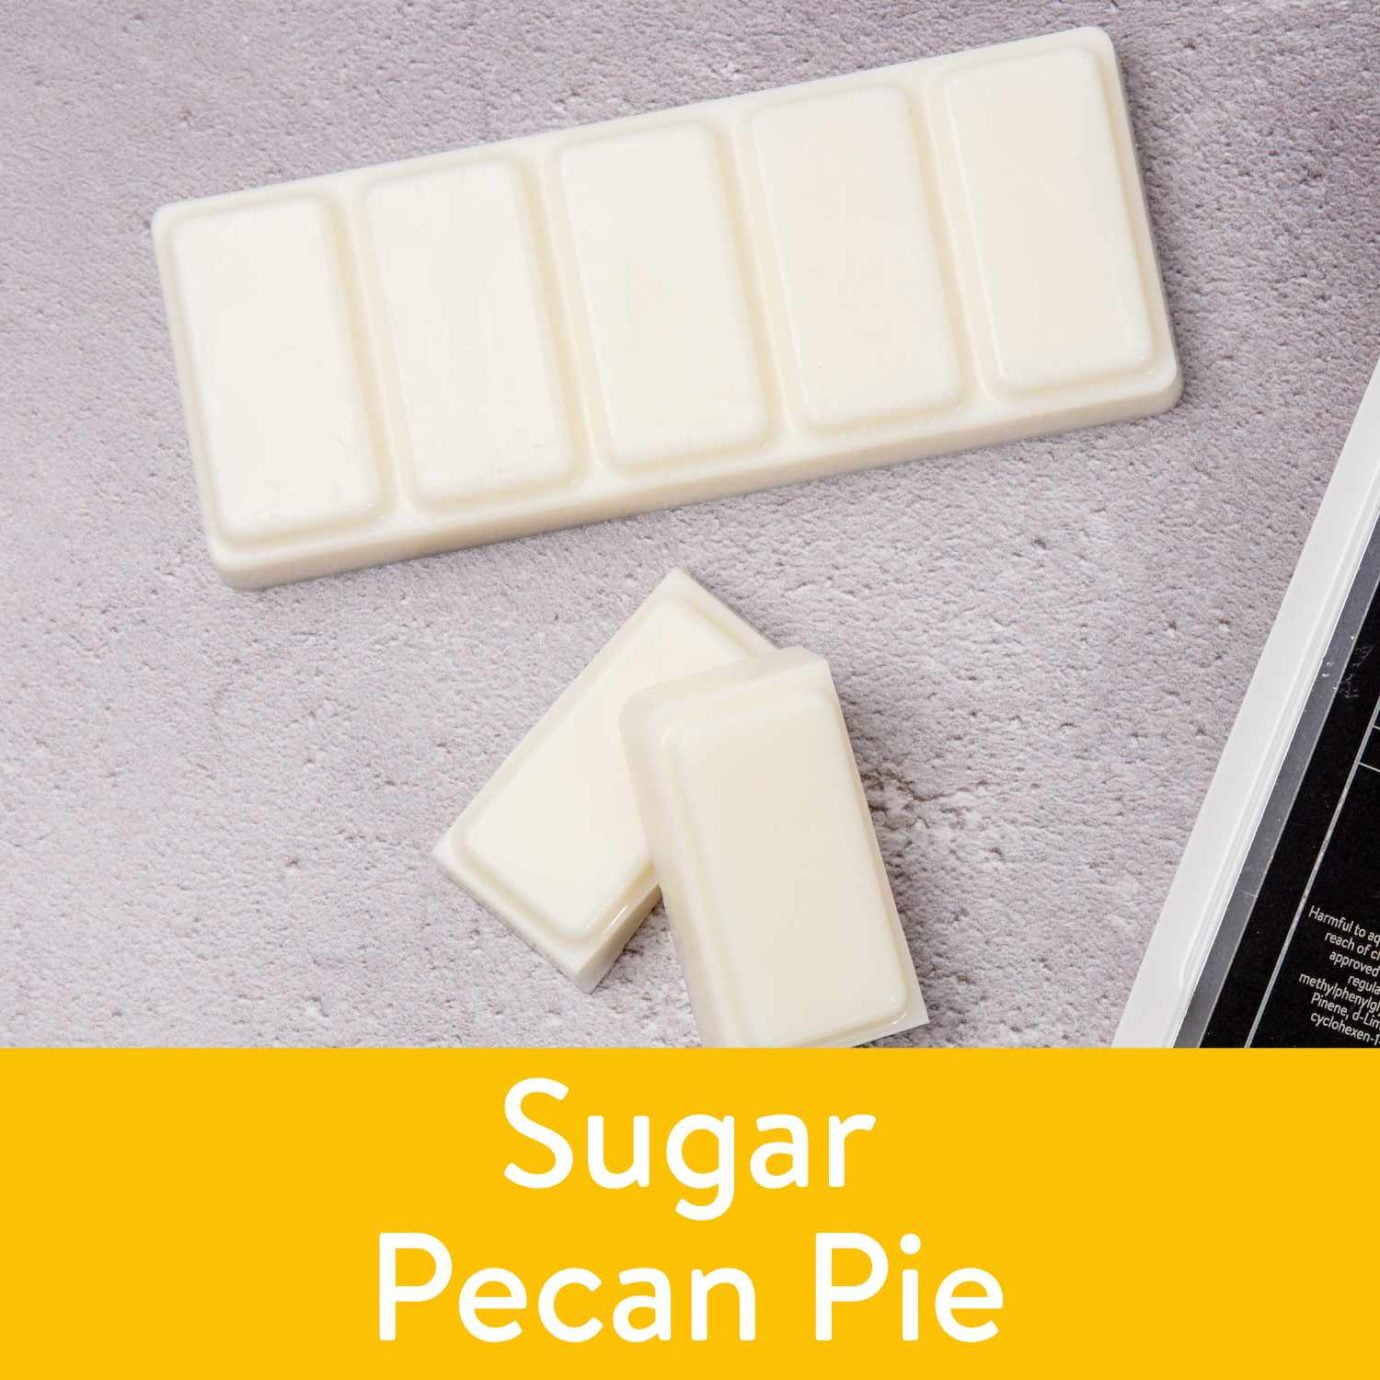 Sugar Pecan Pie